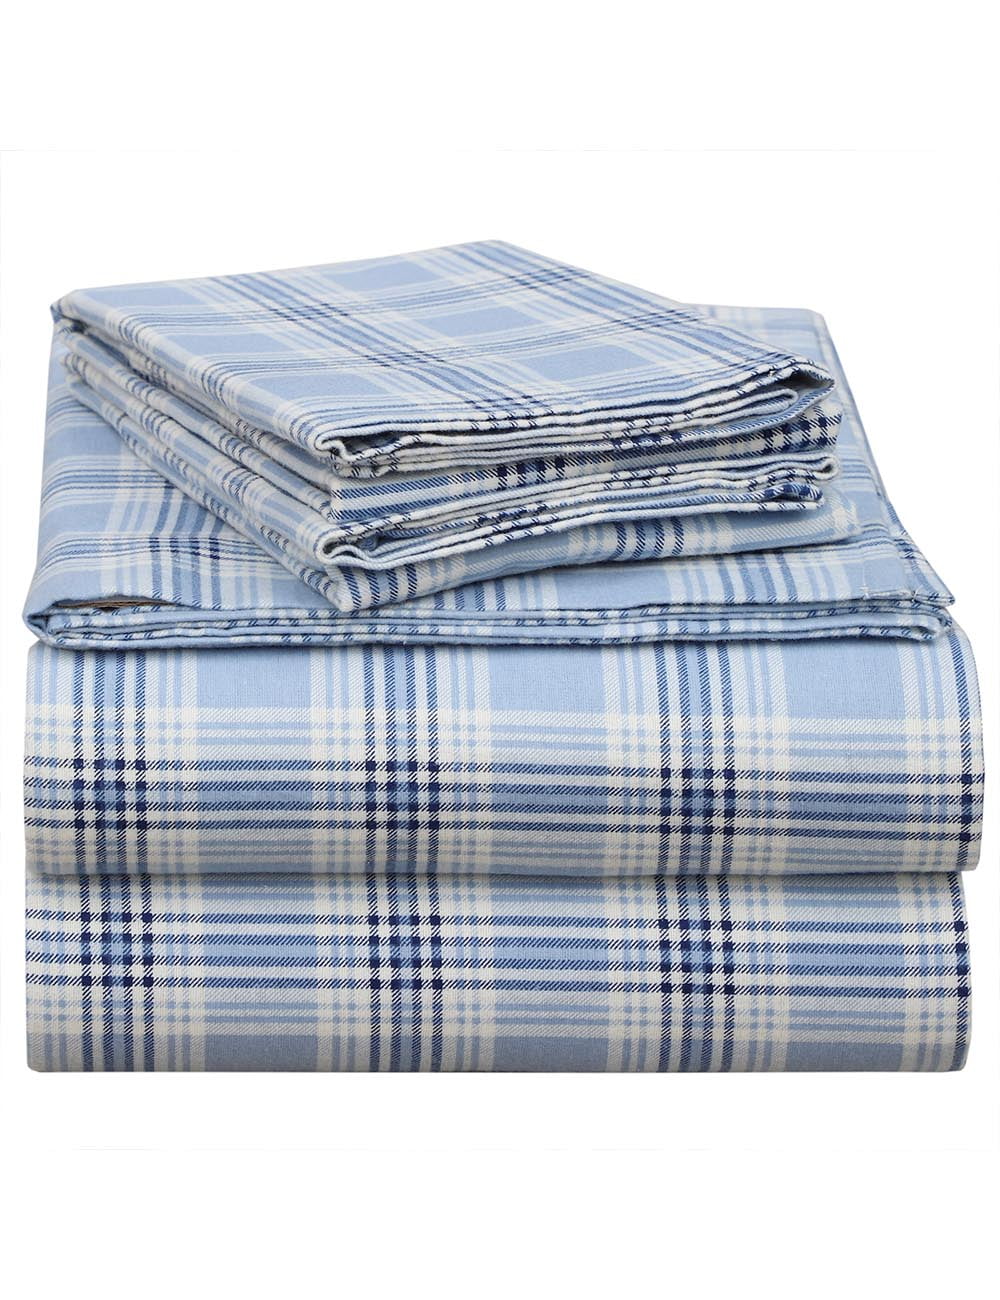 EnvioHome 160 GSM Cotton Flannel Sheet Set - Queen, Blue Plaid ...